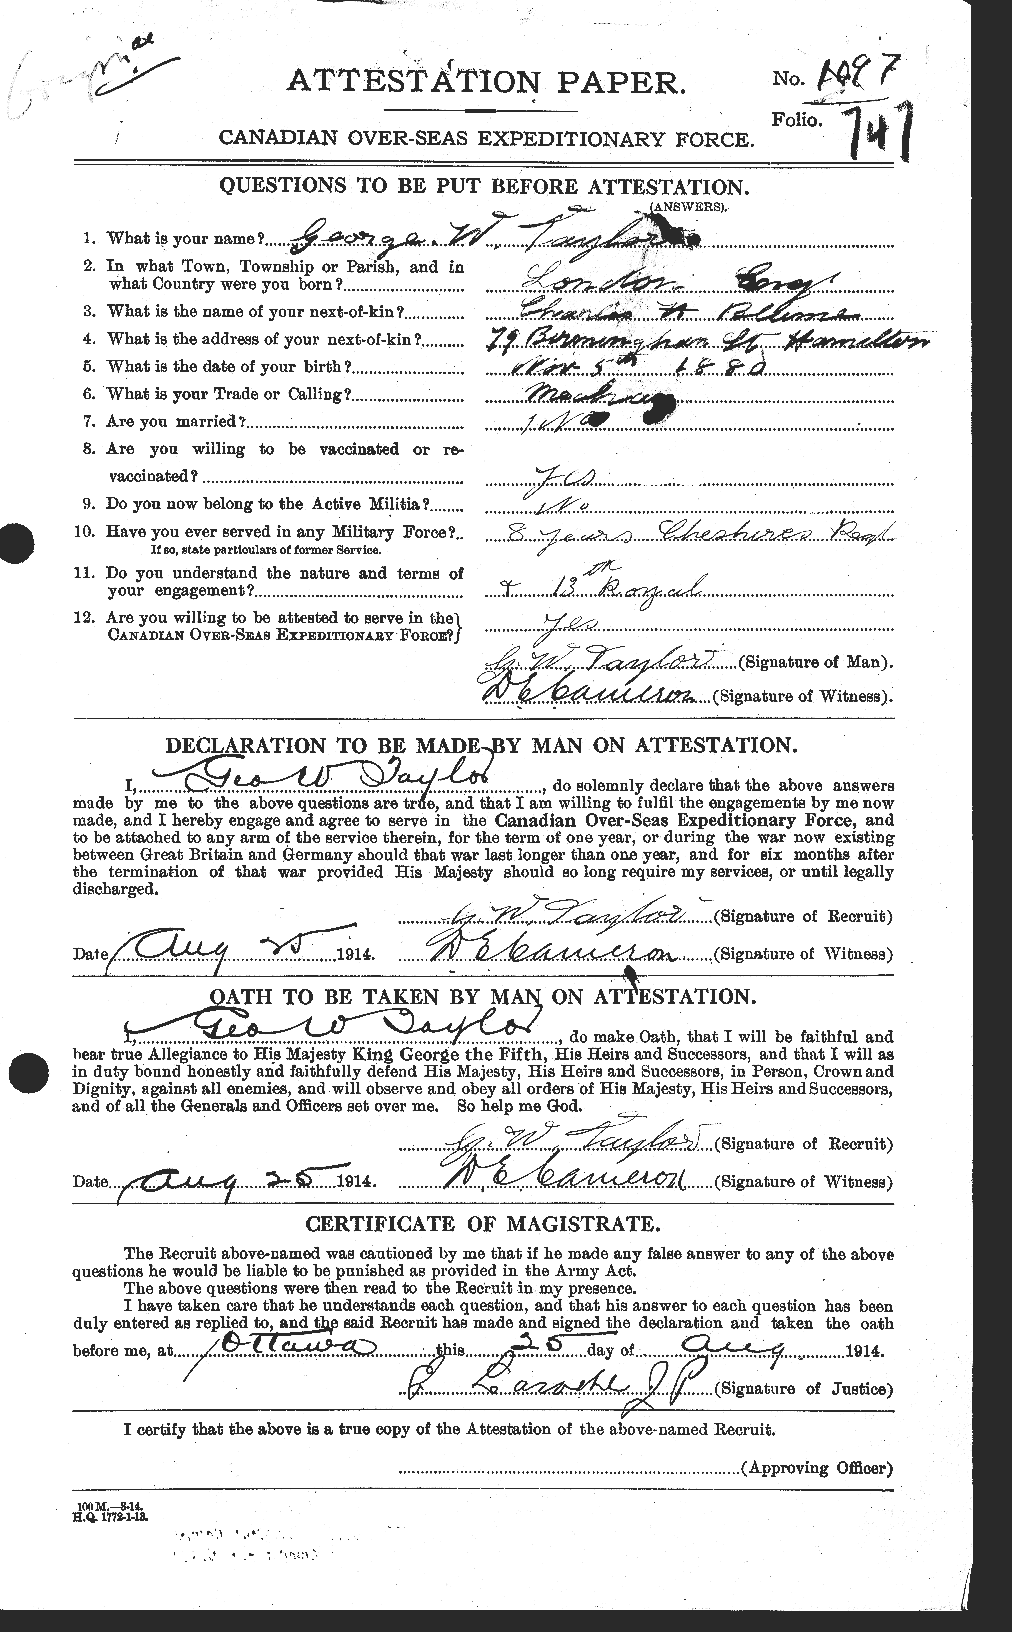 Dossiers du Personnel de la Première Guerre mondiale - CEC 626362a